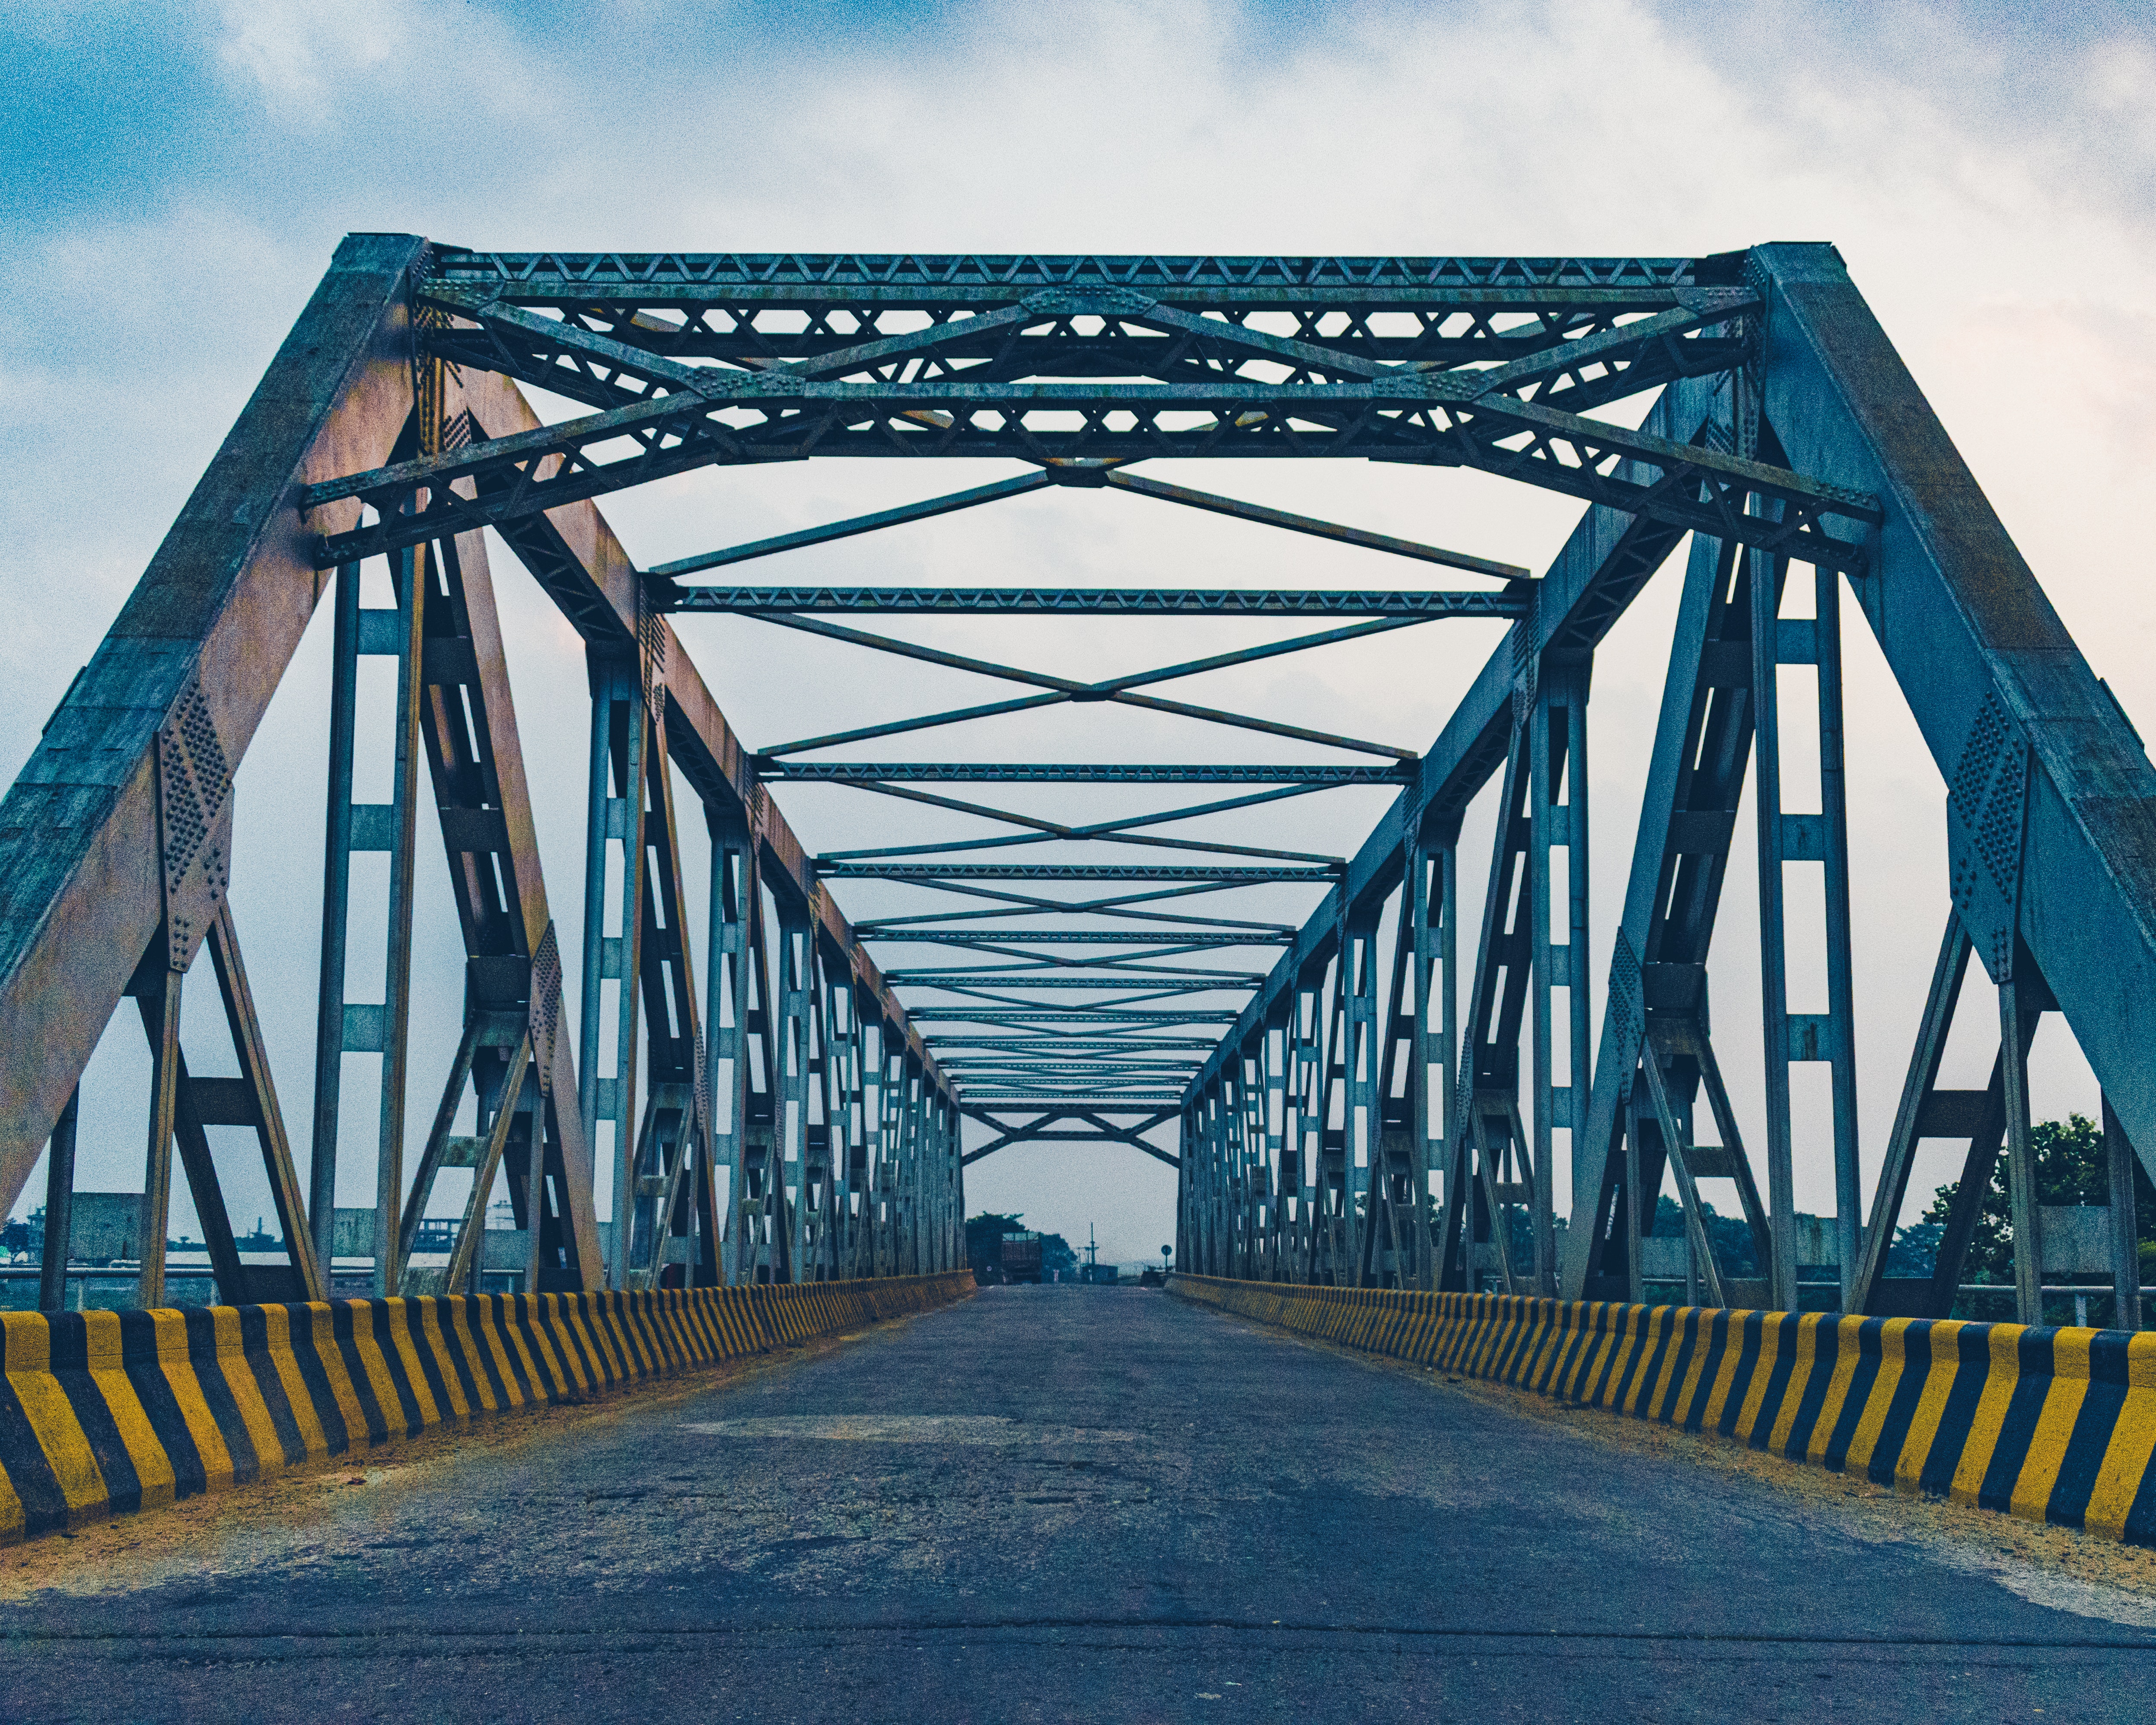 Puentes similares al de la fotografía, pero más pequeños, fueron adjudicados por el Ejército de Guatemala para instalar en el hundimiento del km 15 de la ruta al Pacífico. (Foto Prensa Libre: Pexels)